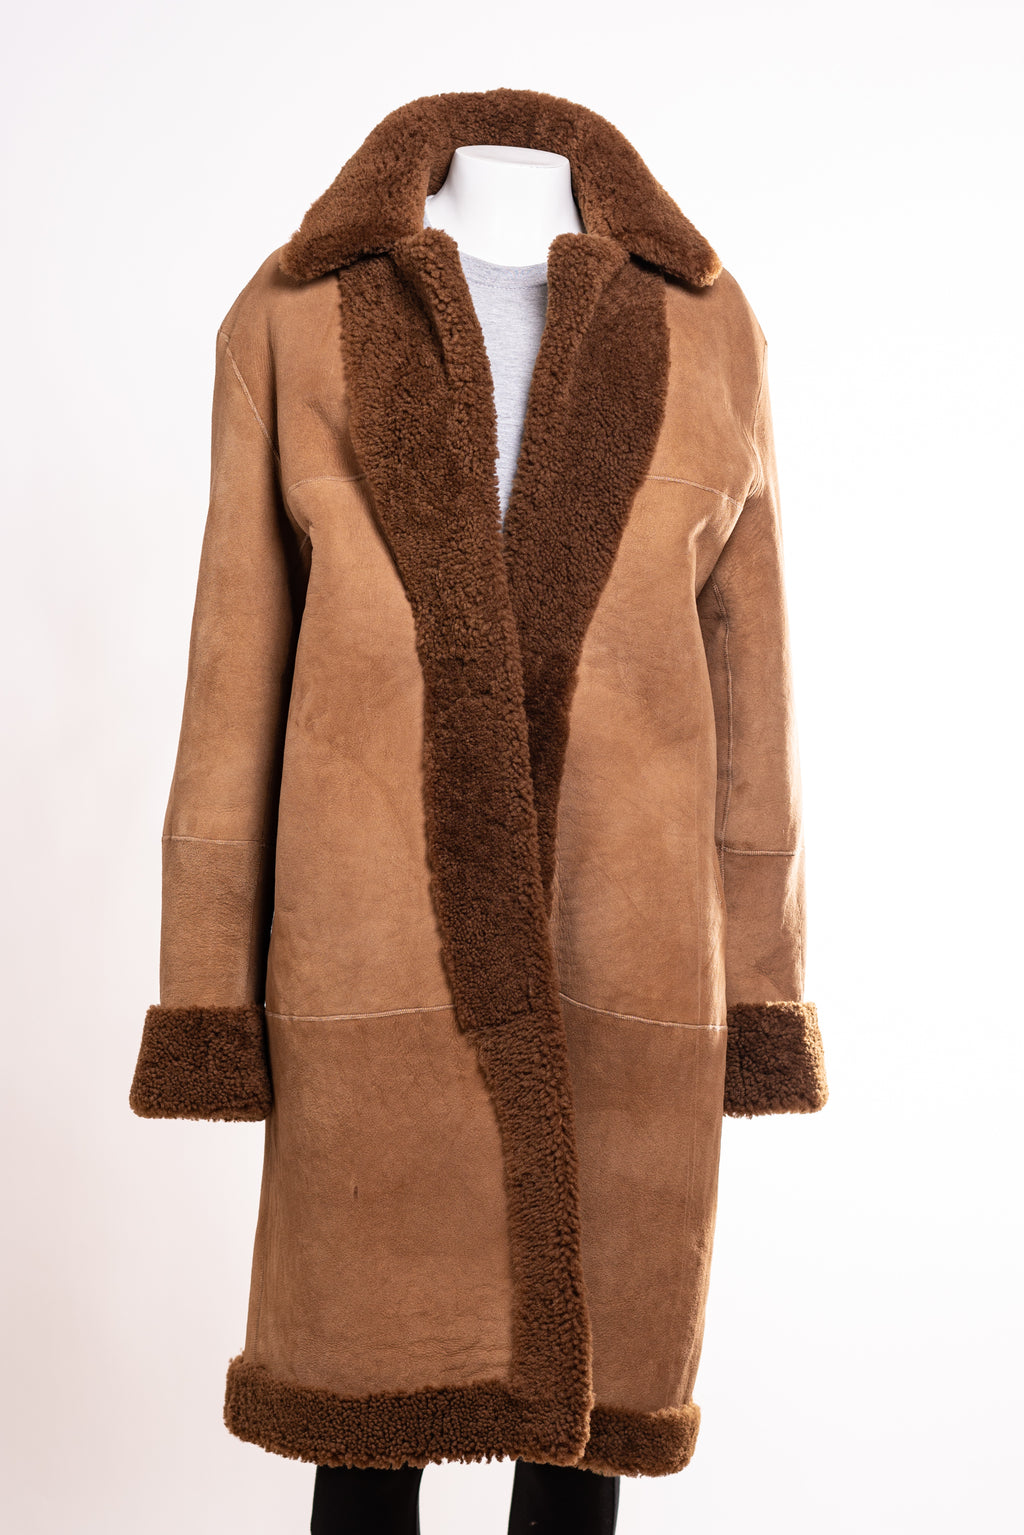 Women's Reversible Teddy Bear Sheepskin Coat: Janet